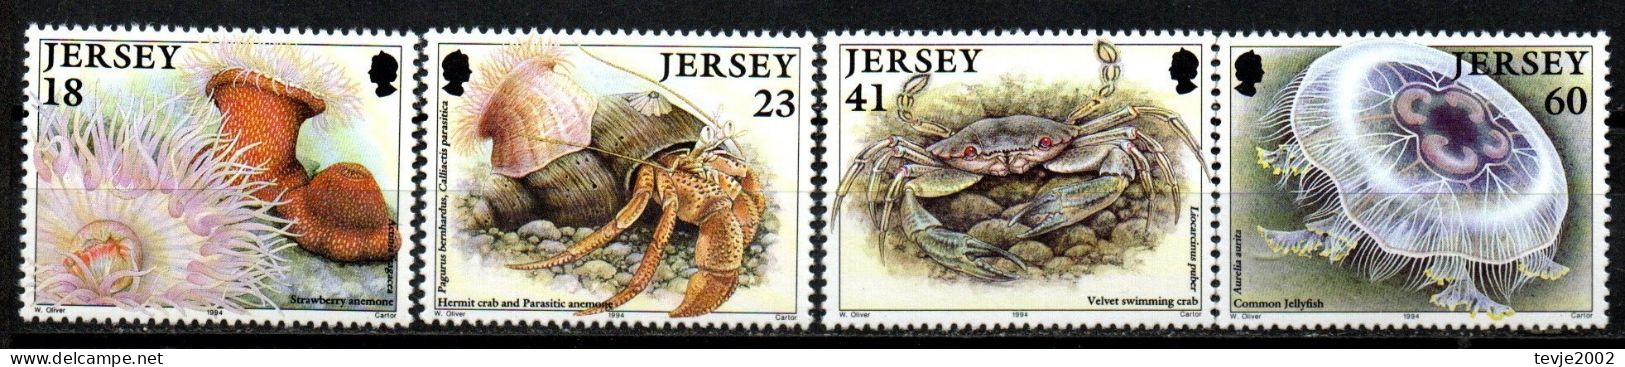 Jersey 1994 - Mi.Nr. 665 - 668 - Postfrisch MNH - Tiere Animals Krabben Crabs - Crostacei